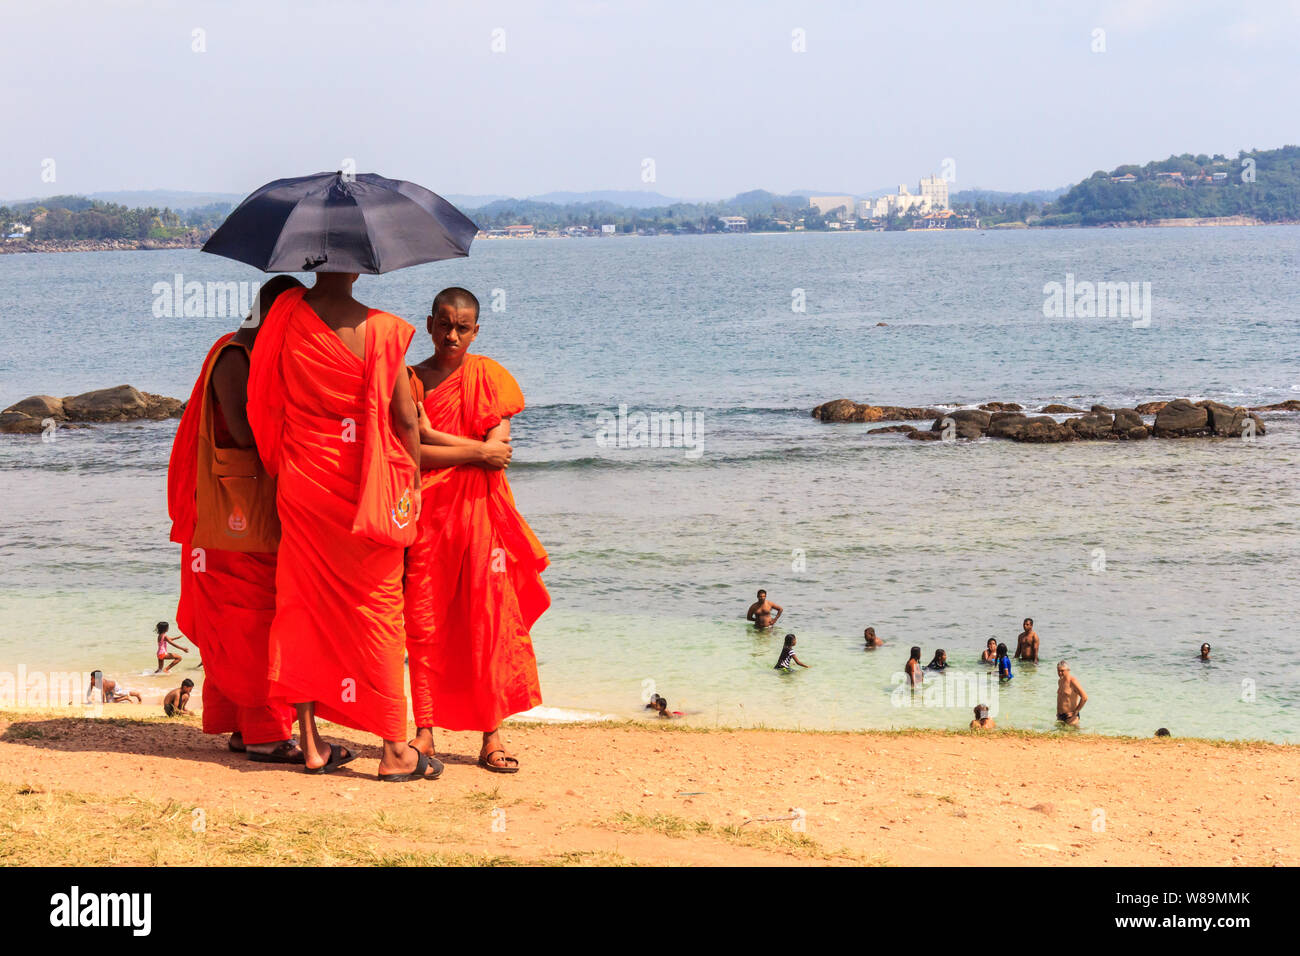 Galle, Sri Lanka - 30. Dezember 2016: Mönche Unterschlupf unter einem Dach während die Menschen im Meer schwimmen, die Wärme kann bedrückend sein. Stockfoto